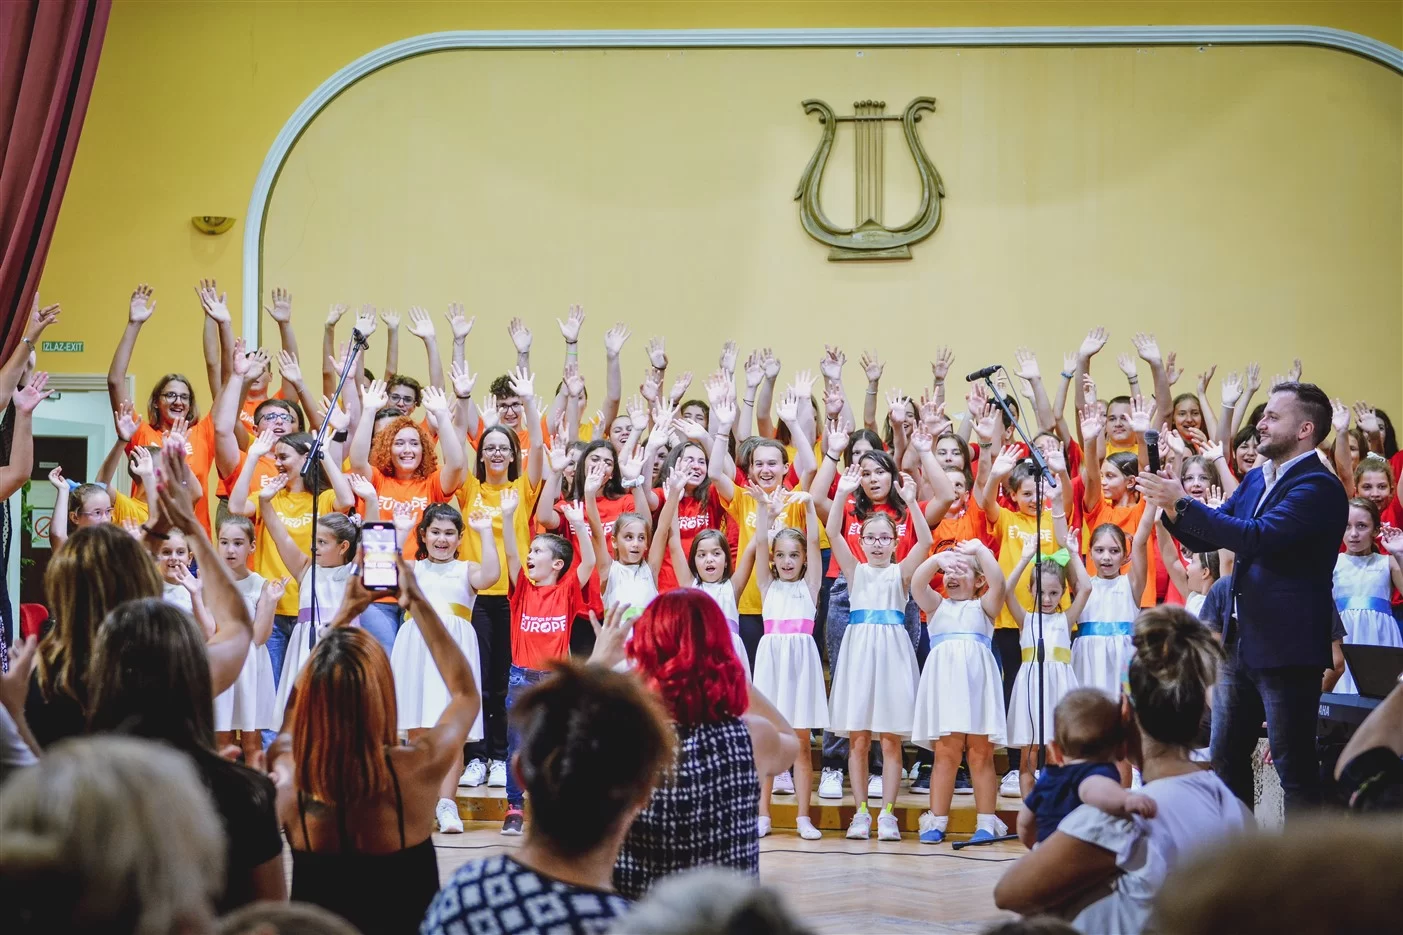 Podrinjci iz "Kuće dobrih tonova" koncertom oduševili publiku u Nišu (FOTO)